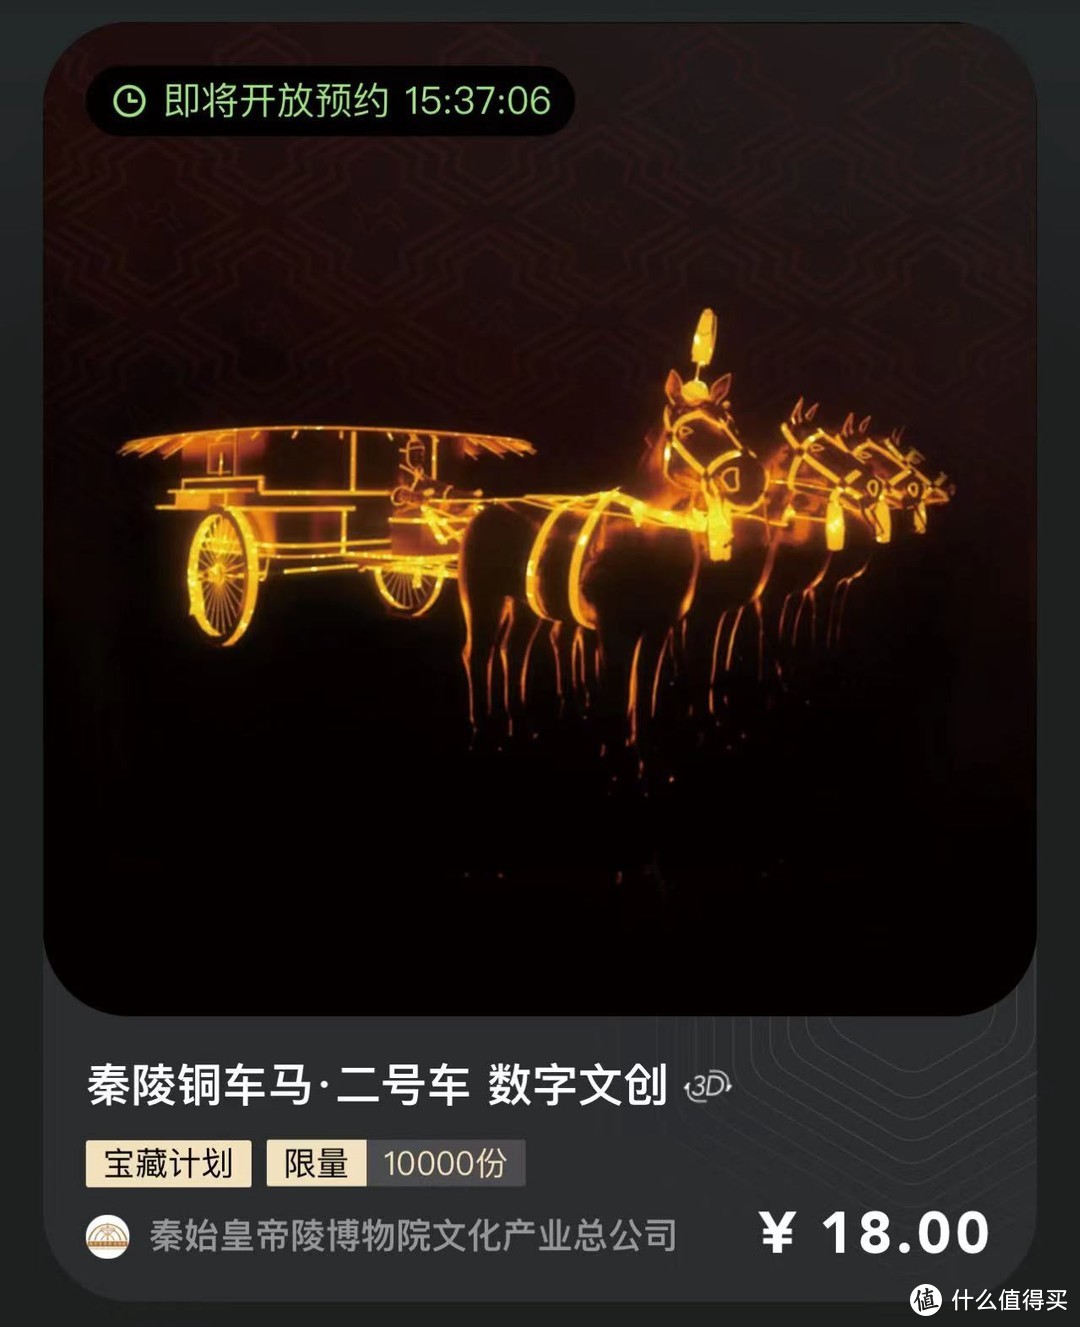 5月19日国内大平台NFT发行预告丨秦岭铜马车数字文创炫酷上线